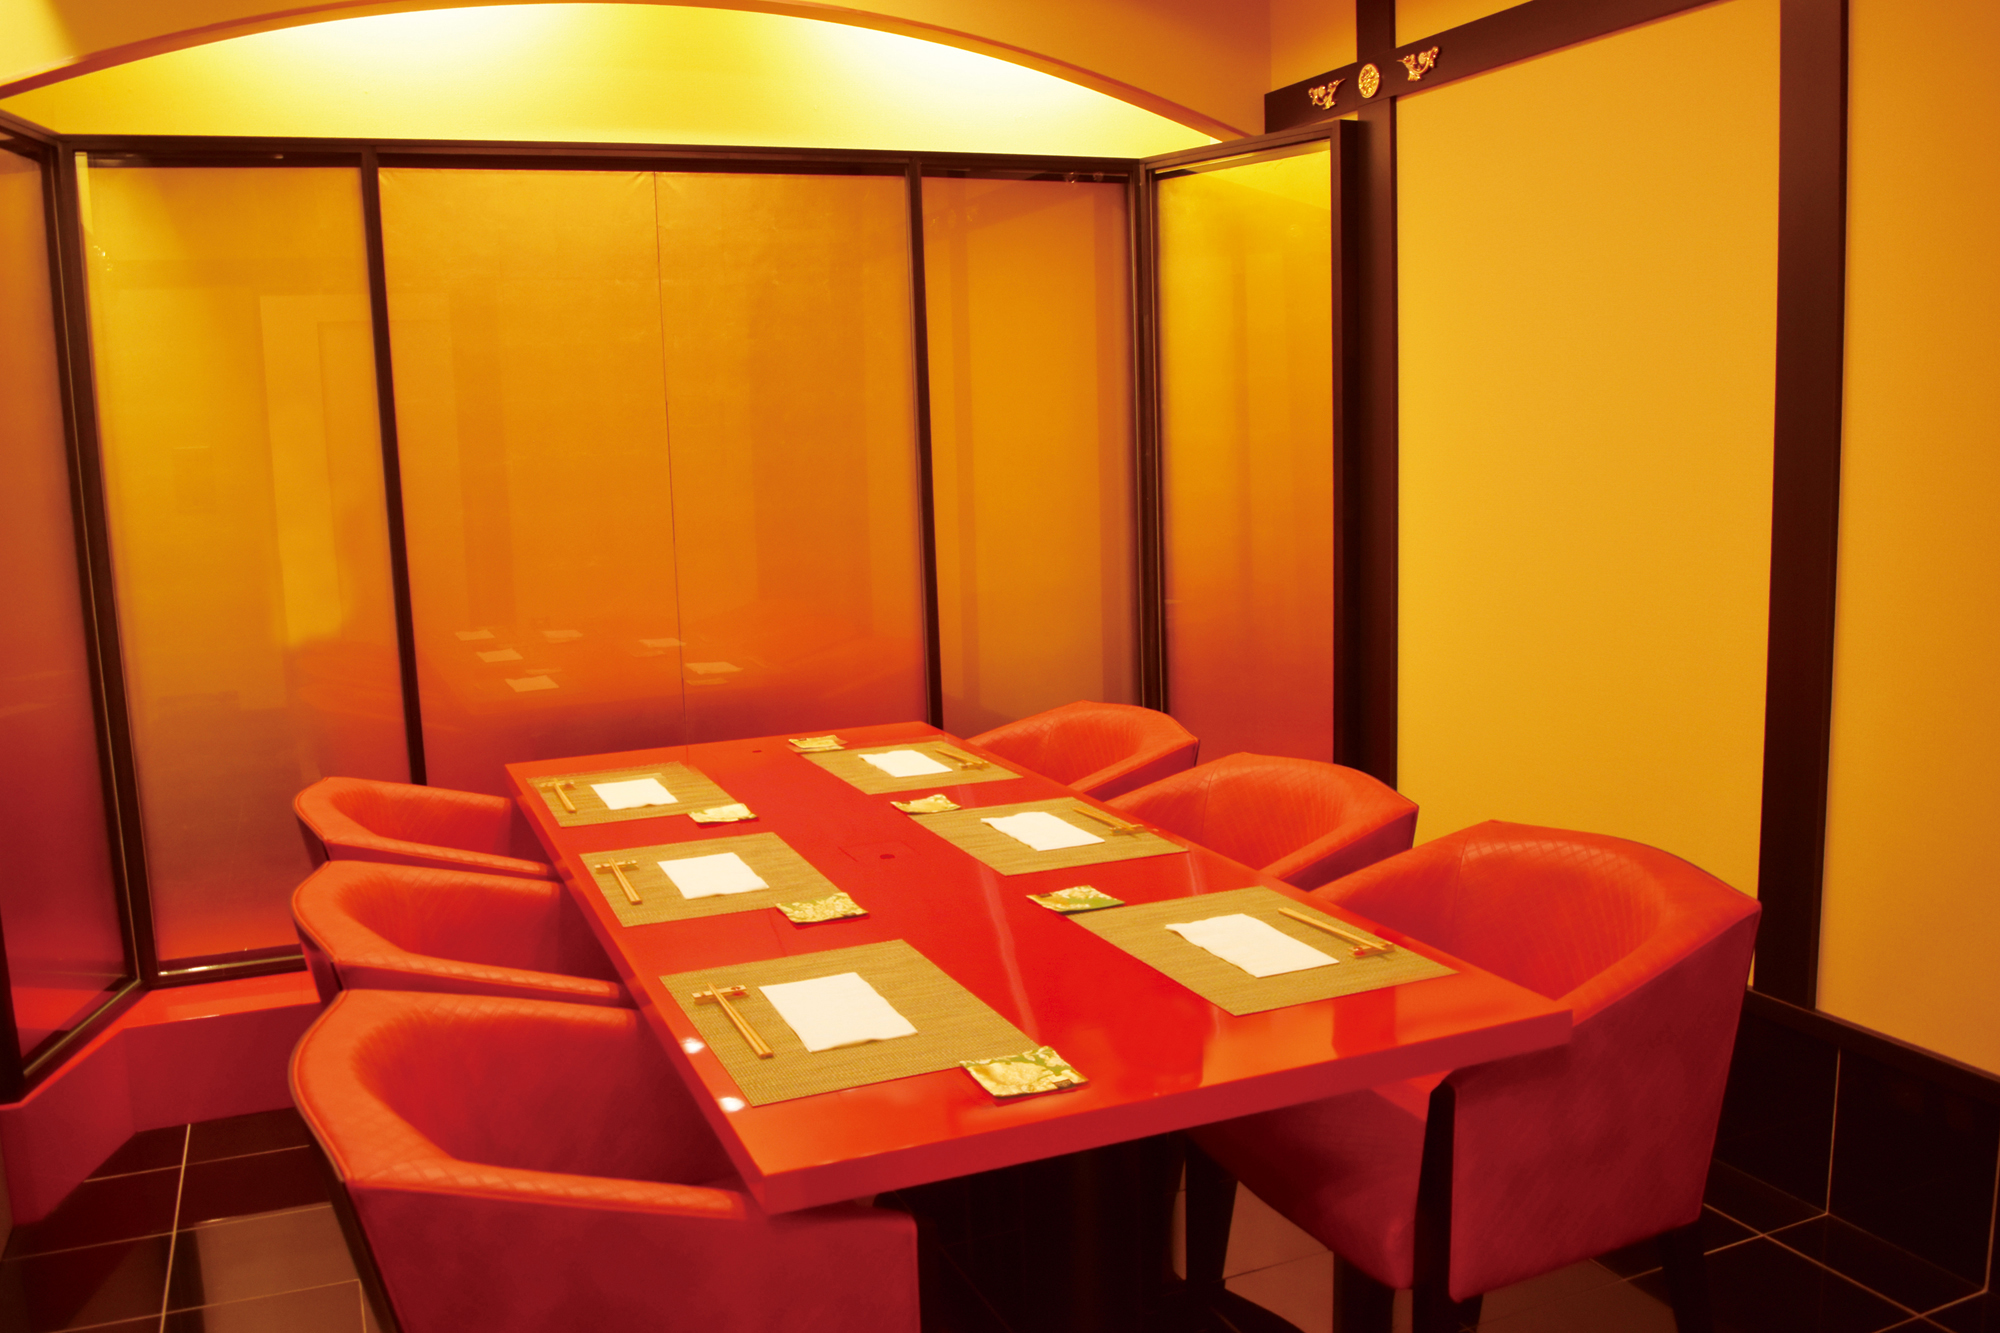 Restaurant Interior - Private Room